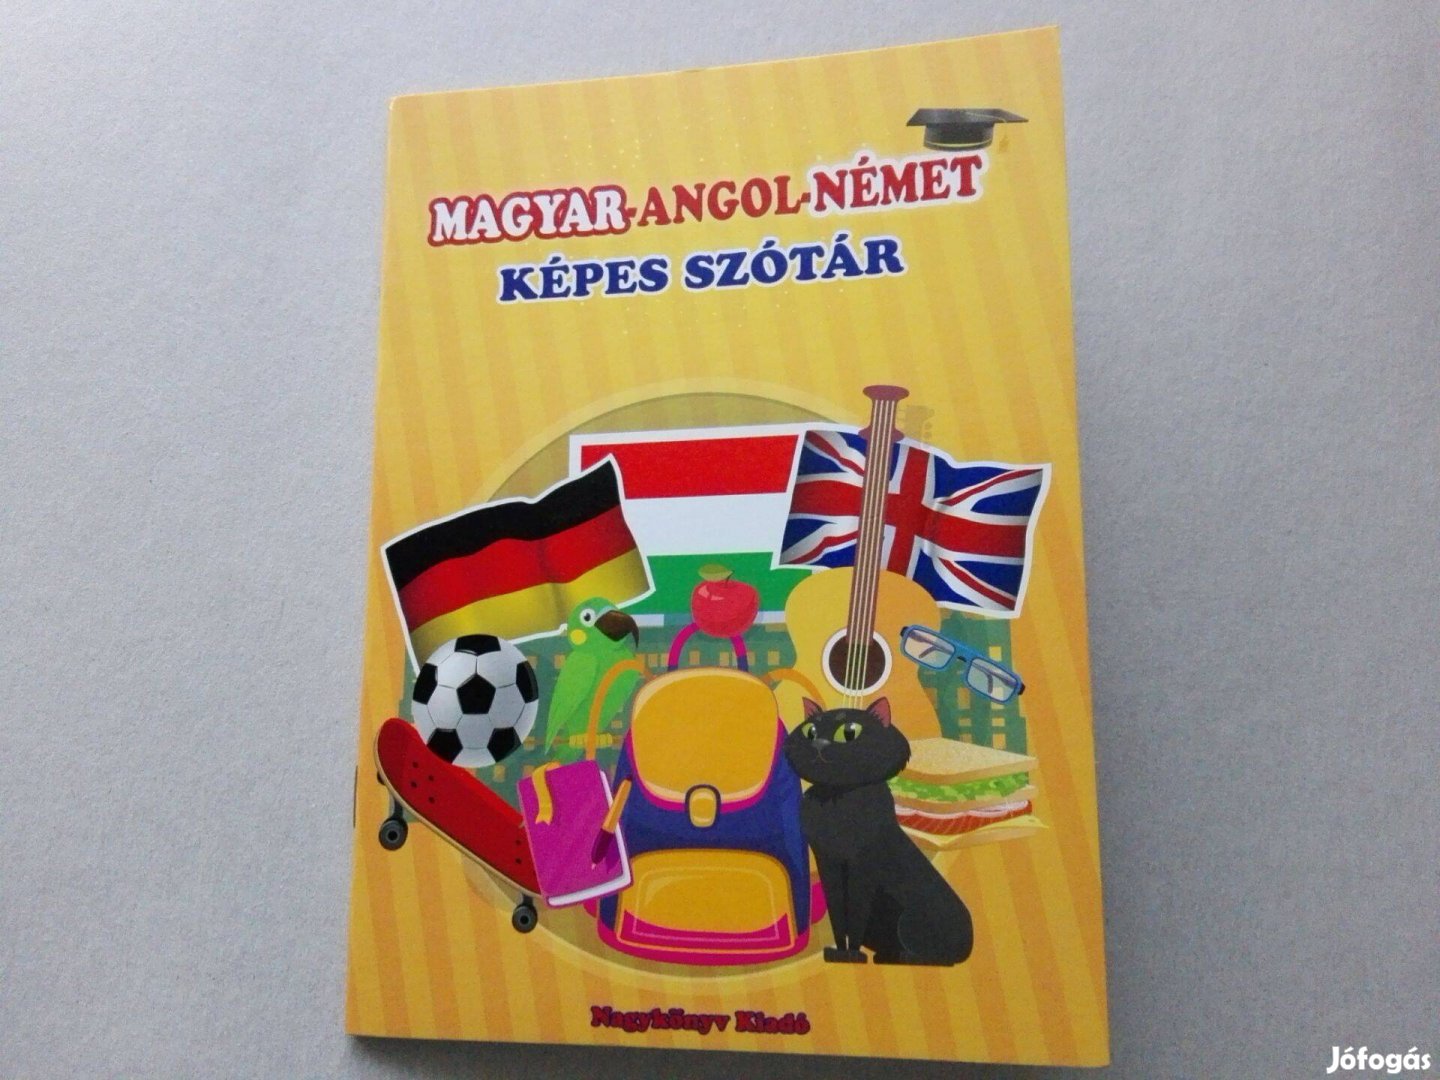 Magyar-Angol-Német képes szótár -teljesen Új állapotba- akciósan eladó